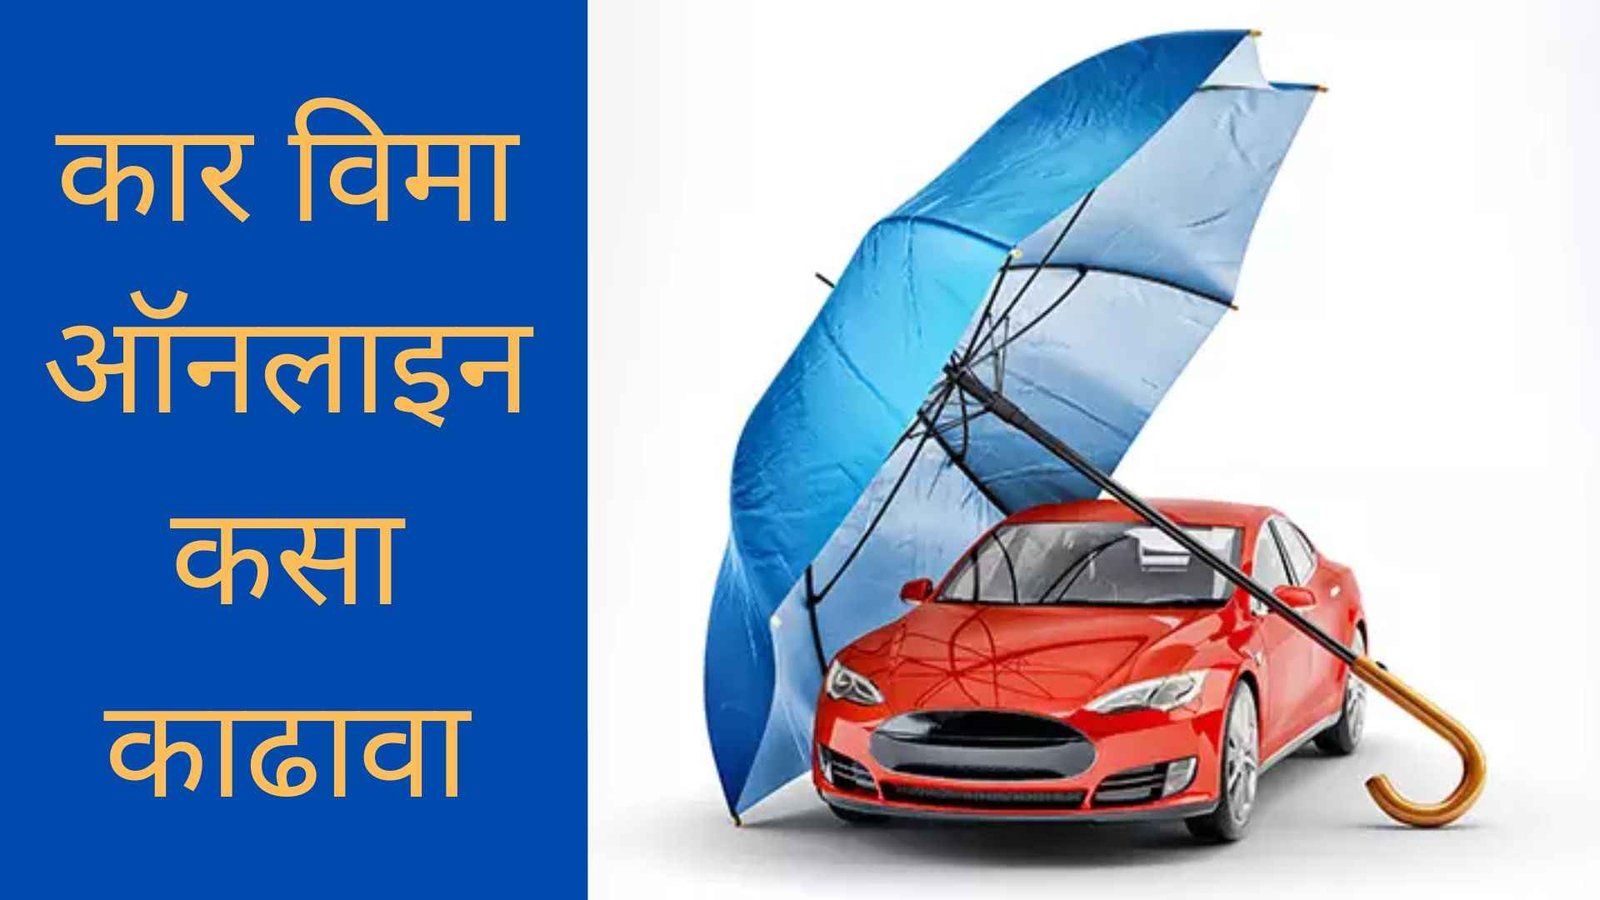 कार विमा ऑनलाइन कसा काढावा | Car Insurance Online In Marathi